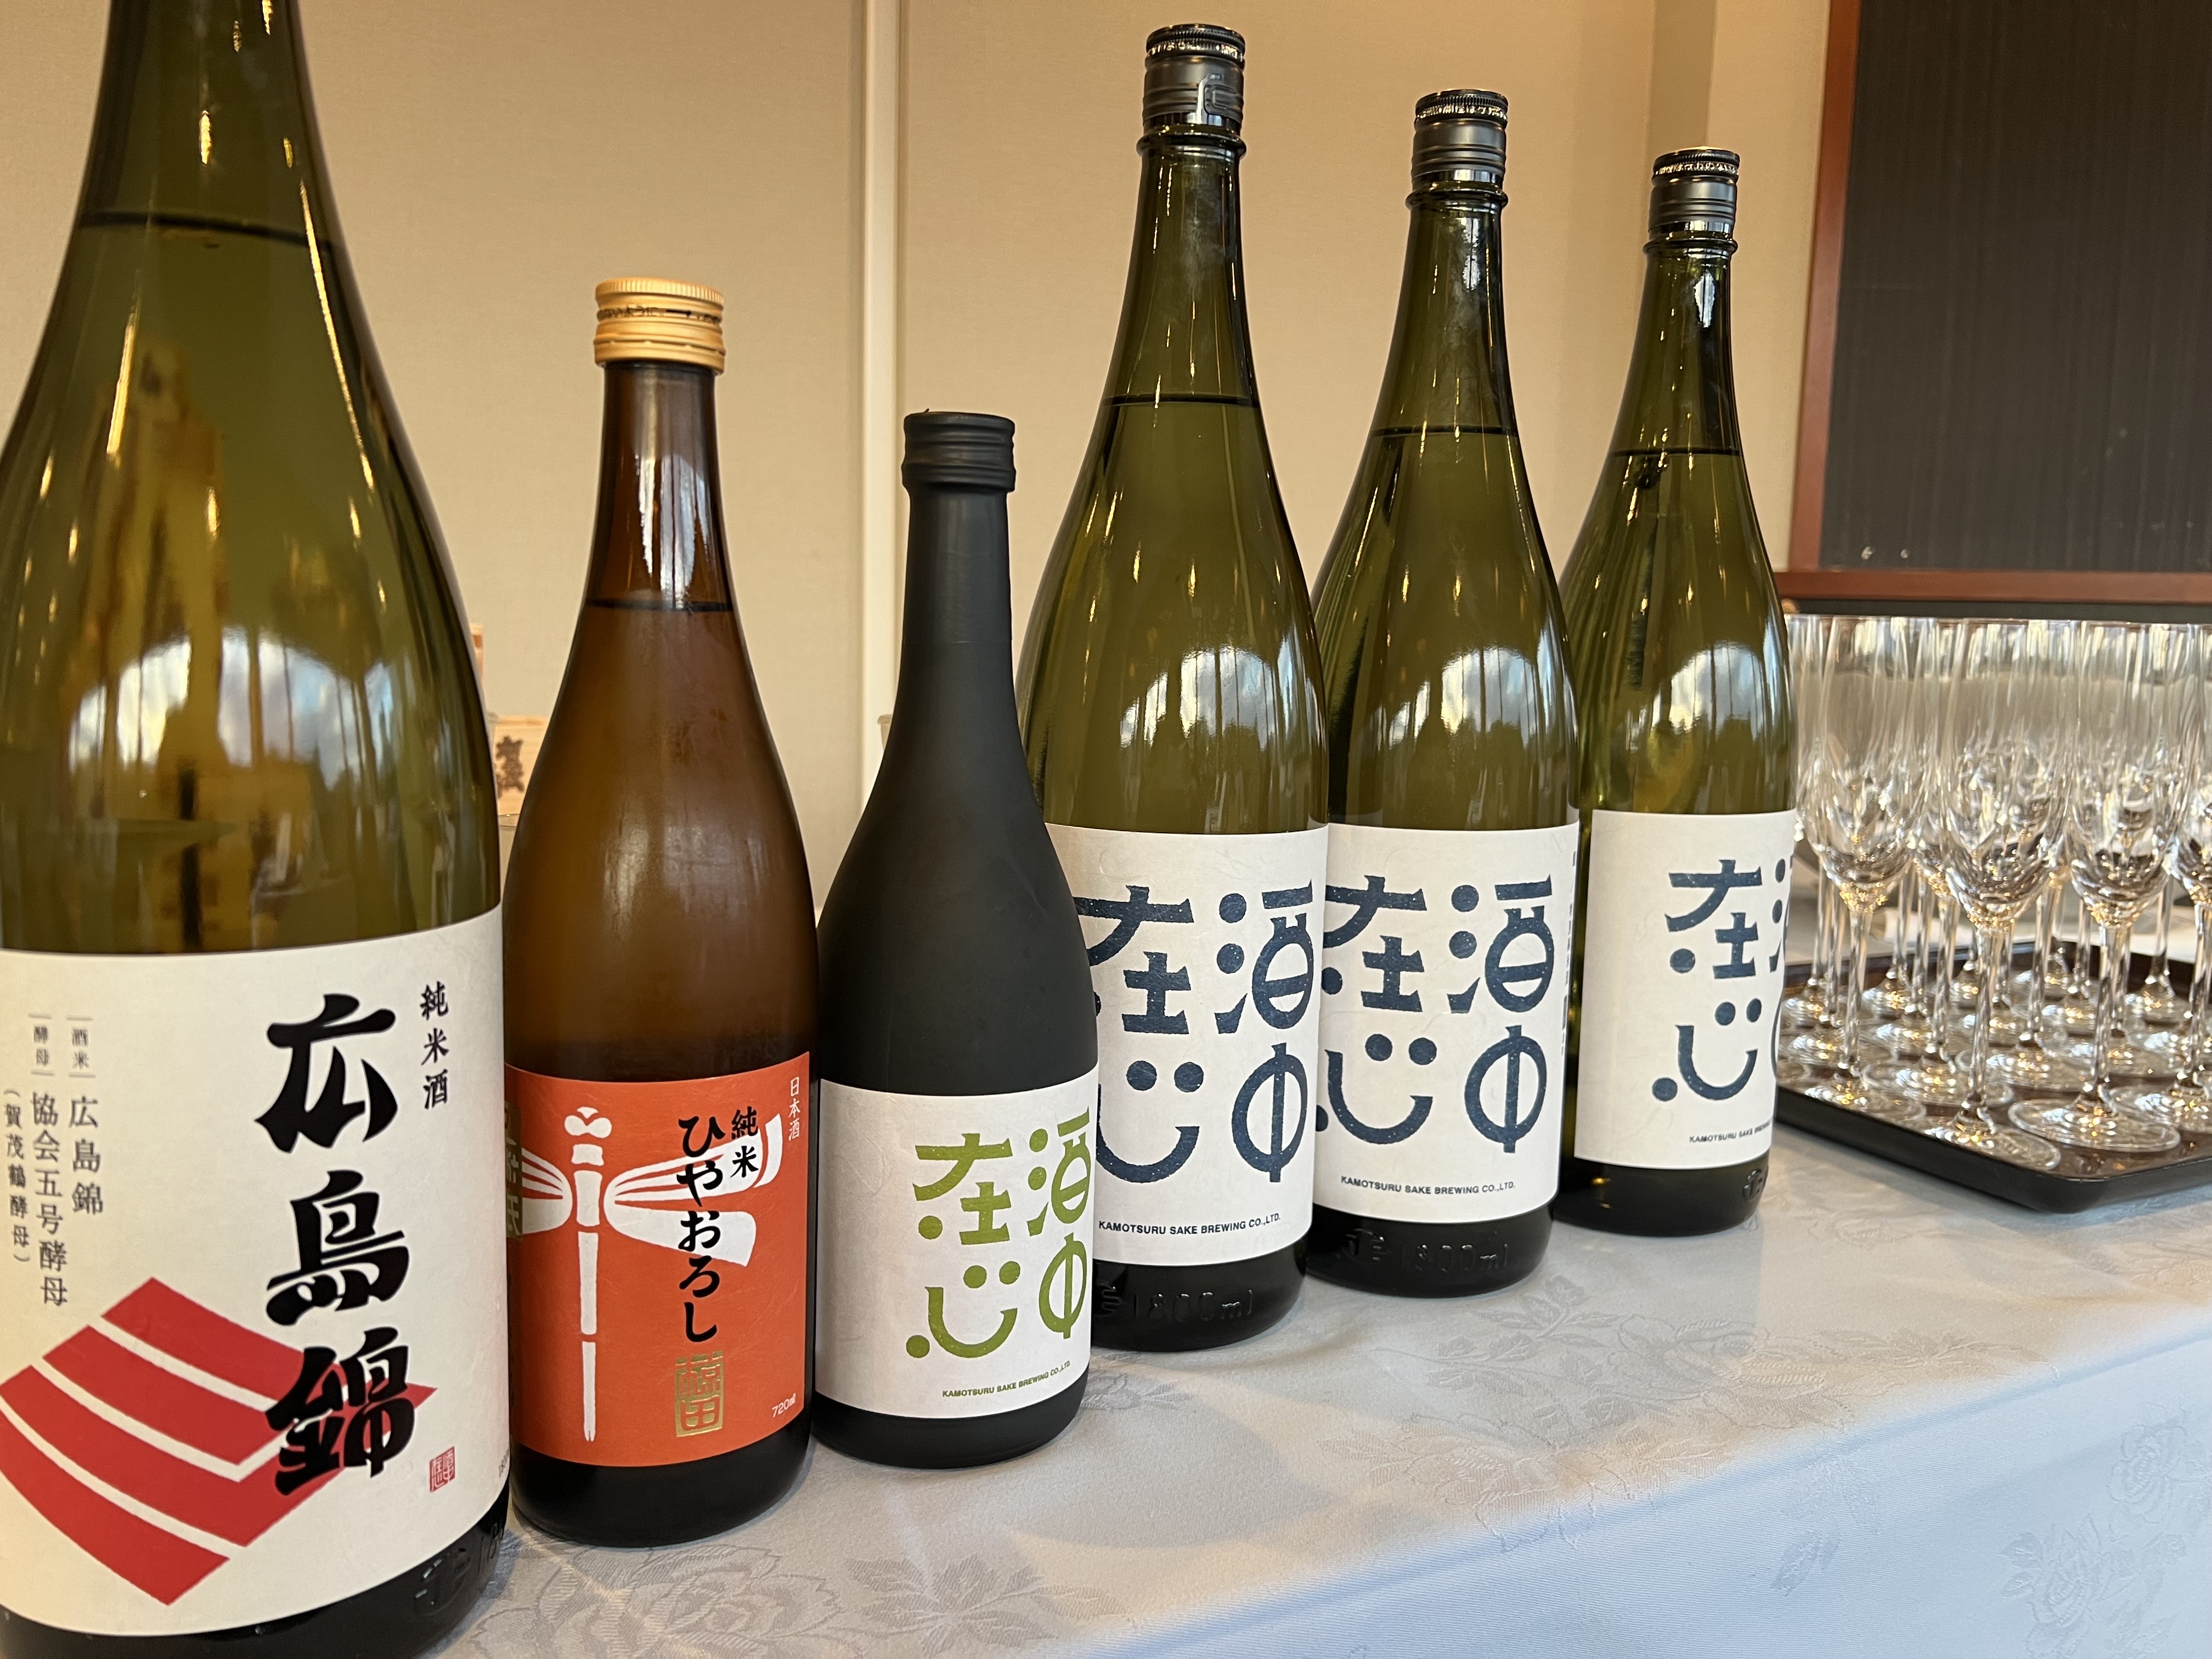 用意された３種類の日本酒